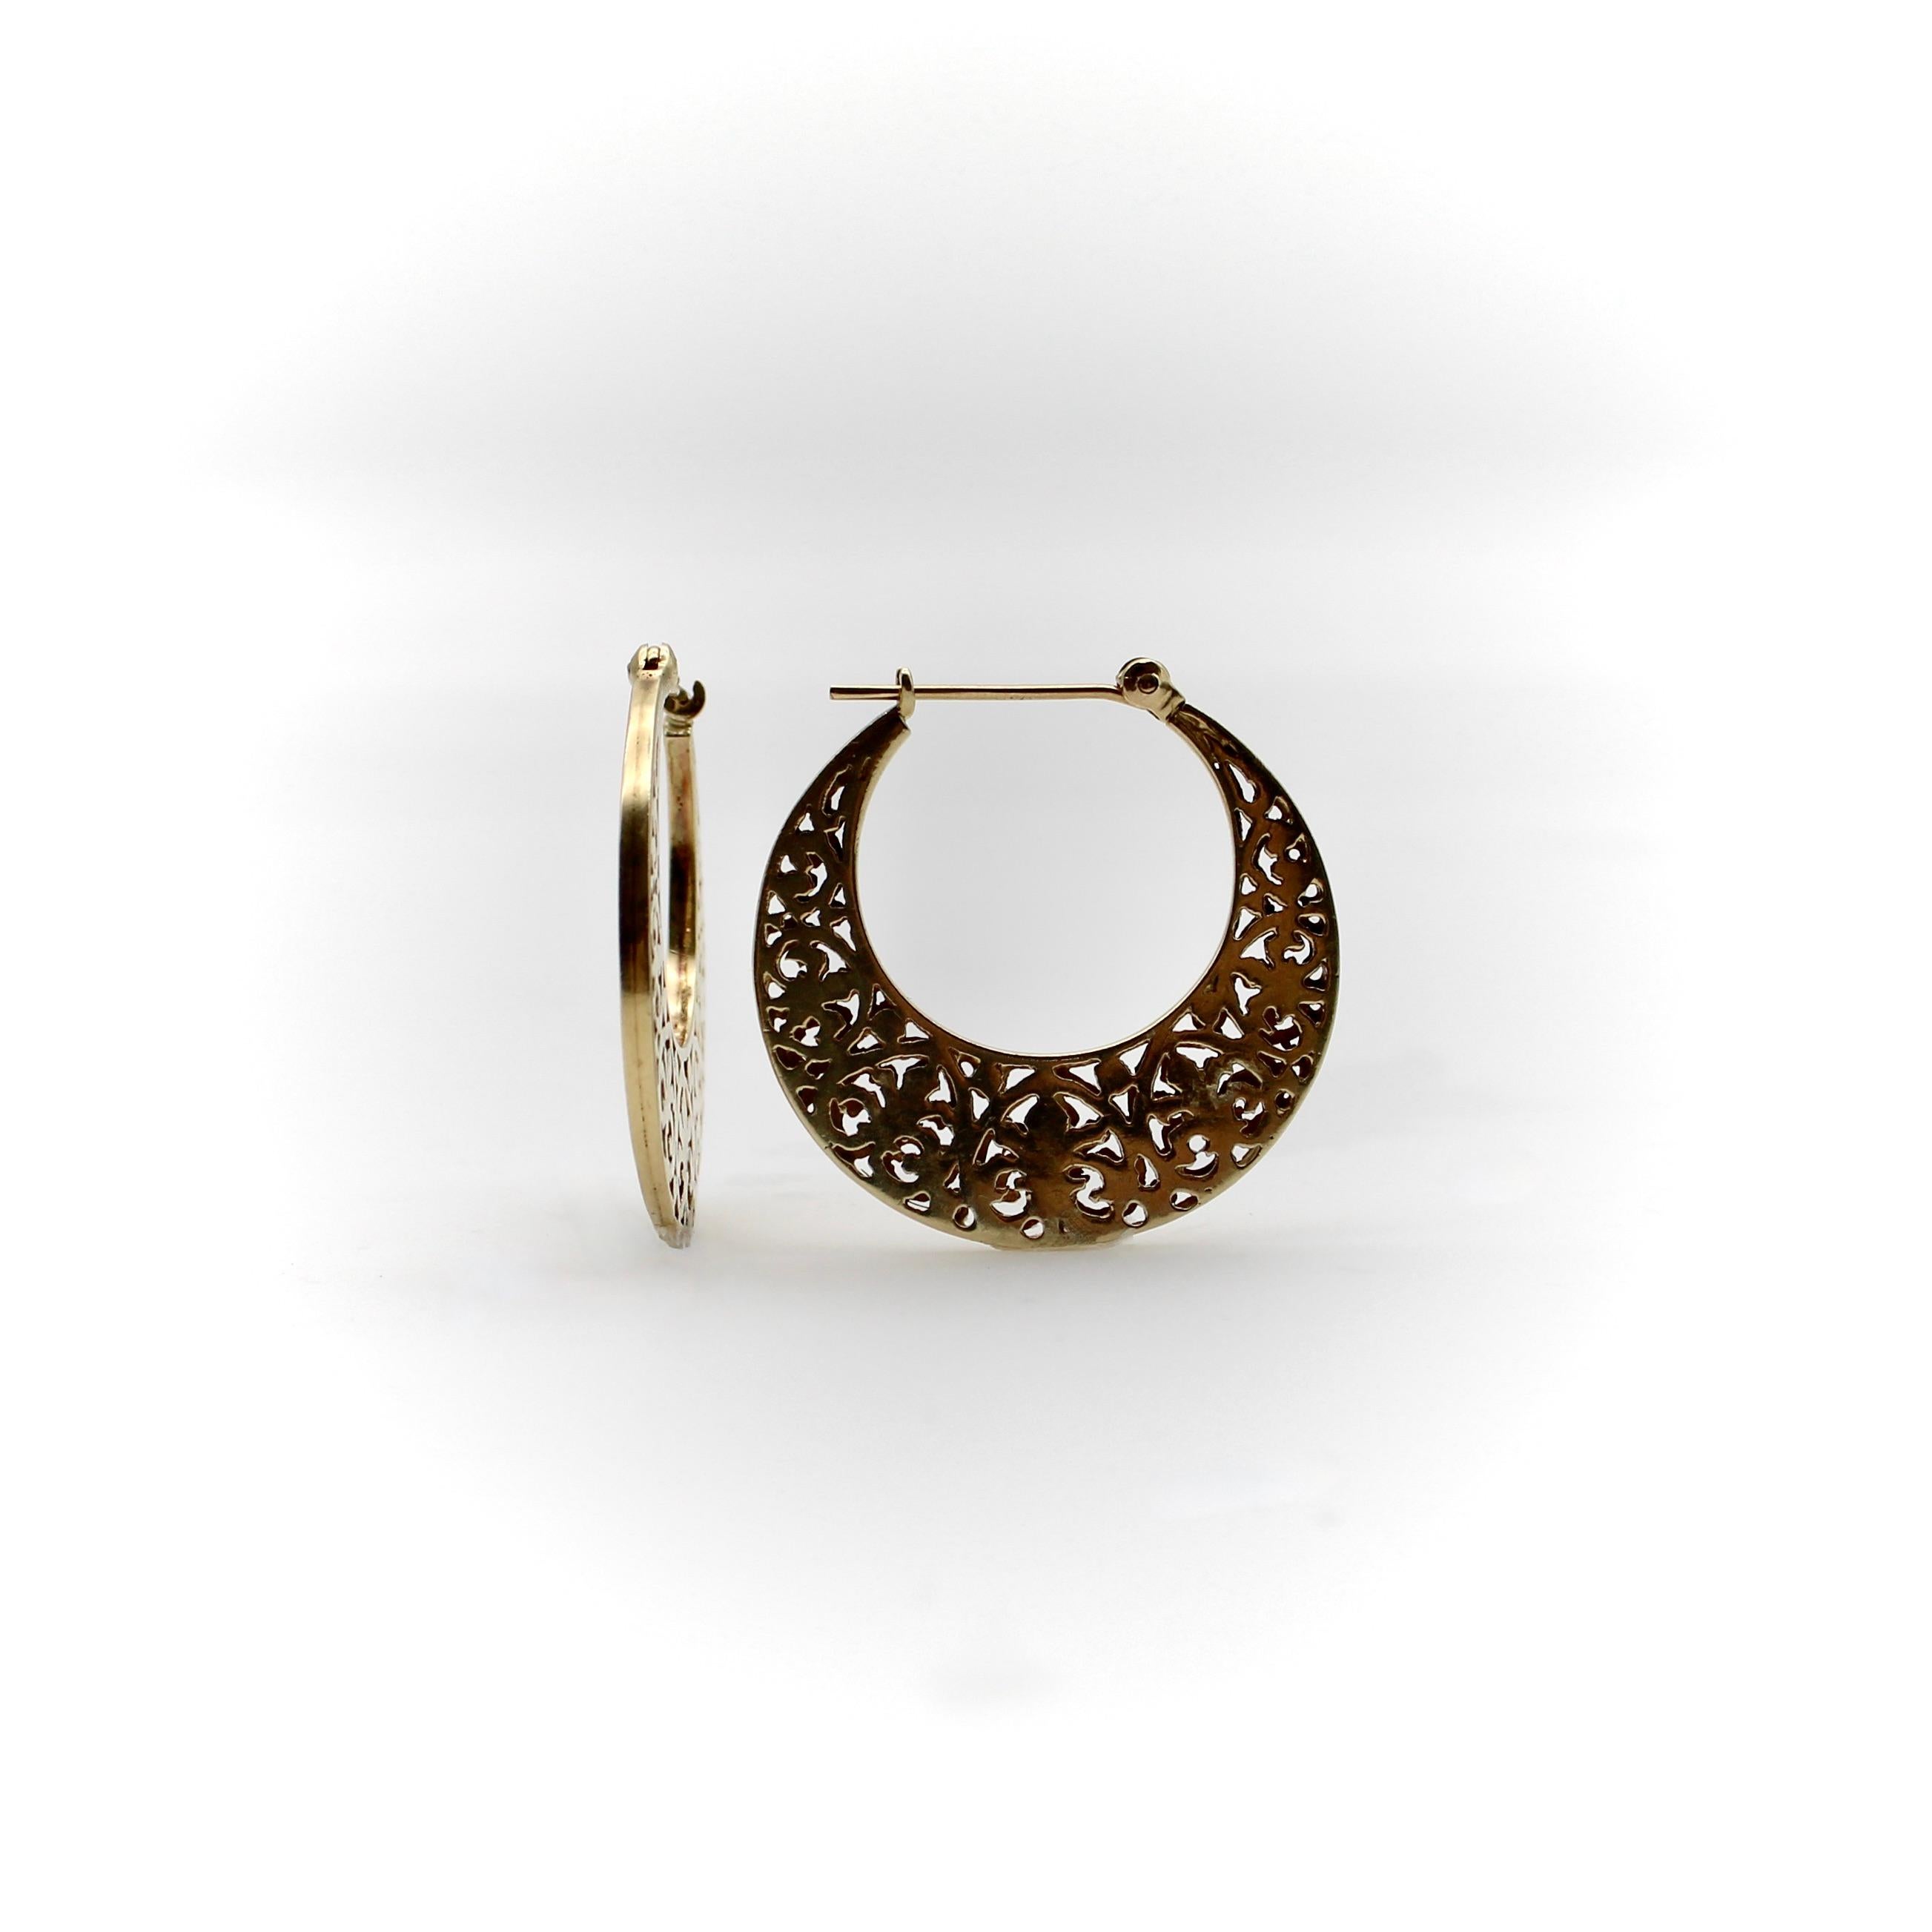 Ein ganz besonderes Paar Vintage-Reifen aus 14-karätigem Gold, die von der Seite betrachtet wie Mondsicheln geformt sind. Die Ohrringe haben ein netzartiges Muster, das auf einem Fleur-de-Lys-Motiv basiert. Sie bestehen aus zwei übereinander